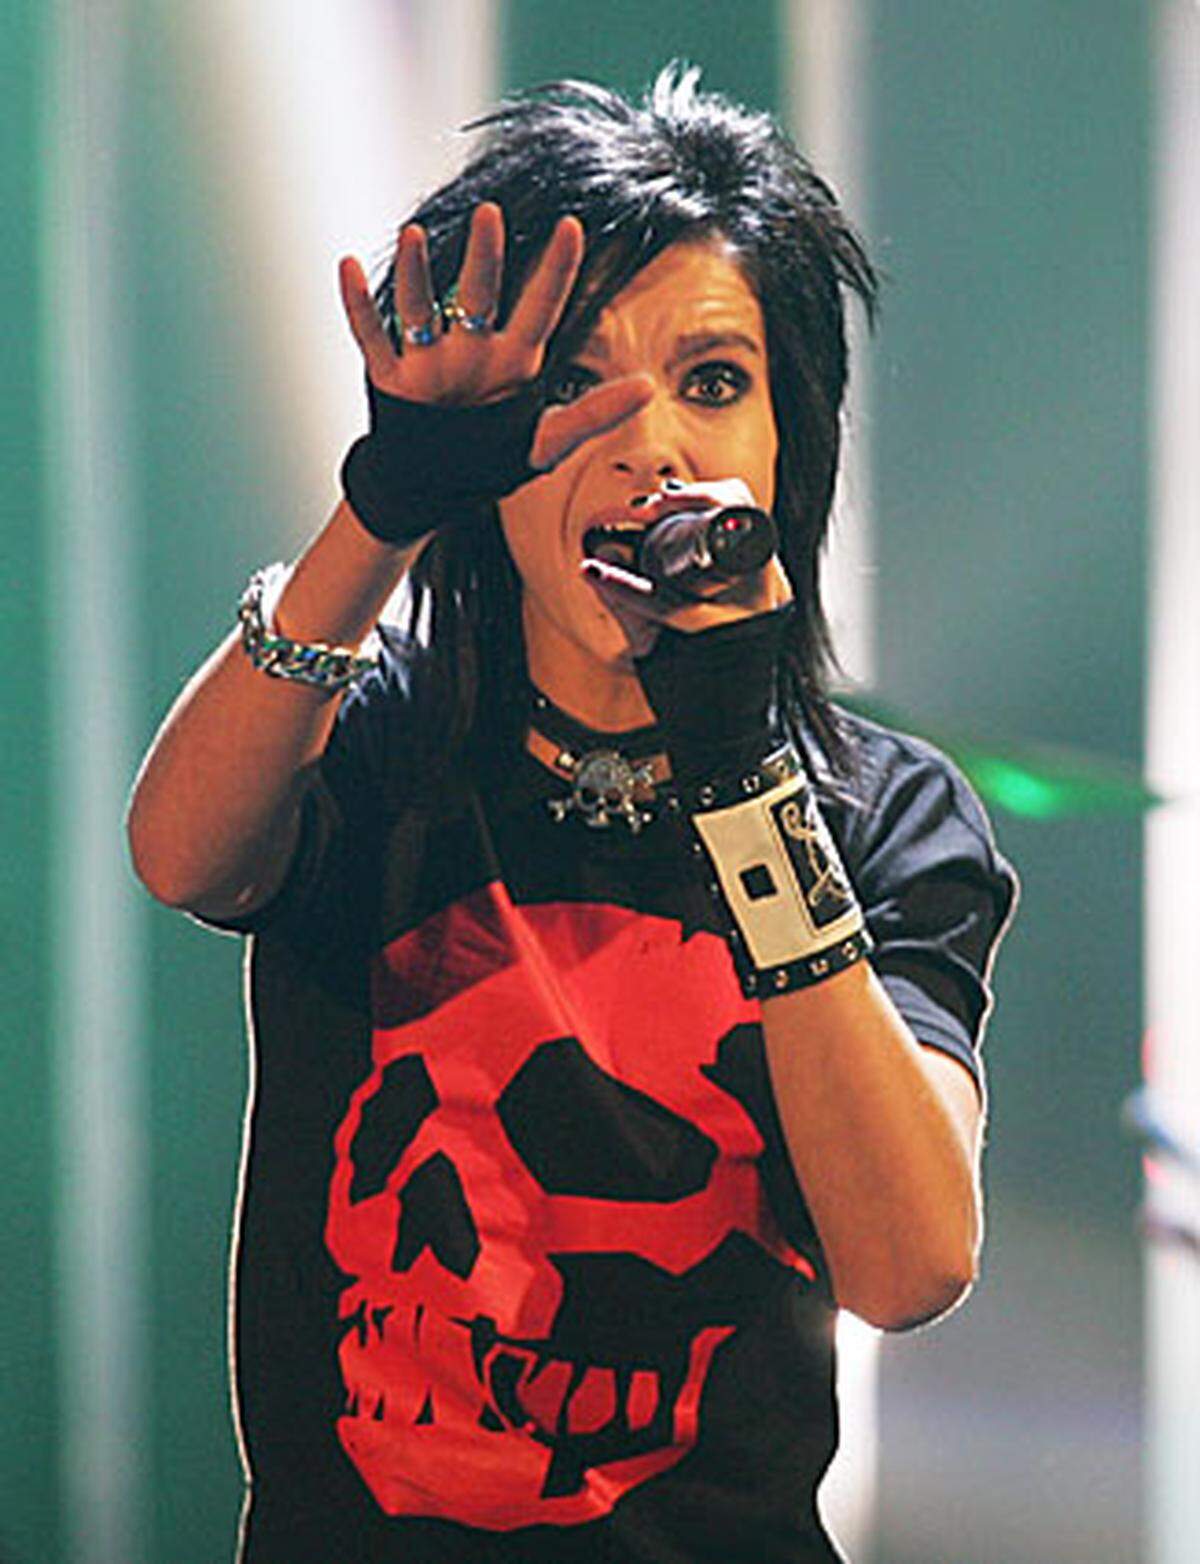 In der deutschen Variante von "Star Search" trat auch Bill Kaulitz auf. Er schied 2003 im Achtelfinale aus, konnte aber auf sich und seine Band Tokio Hotel aufmerksam machen. Mit bleibendem Erfolg.